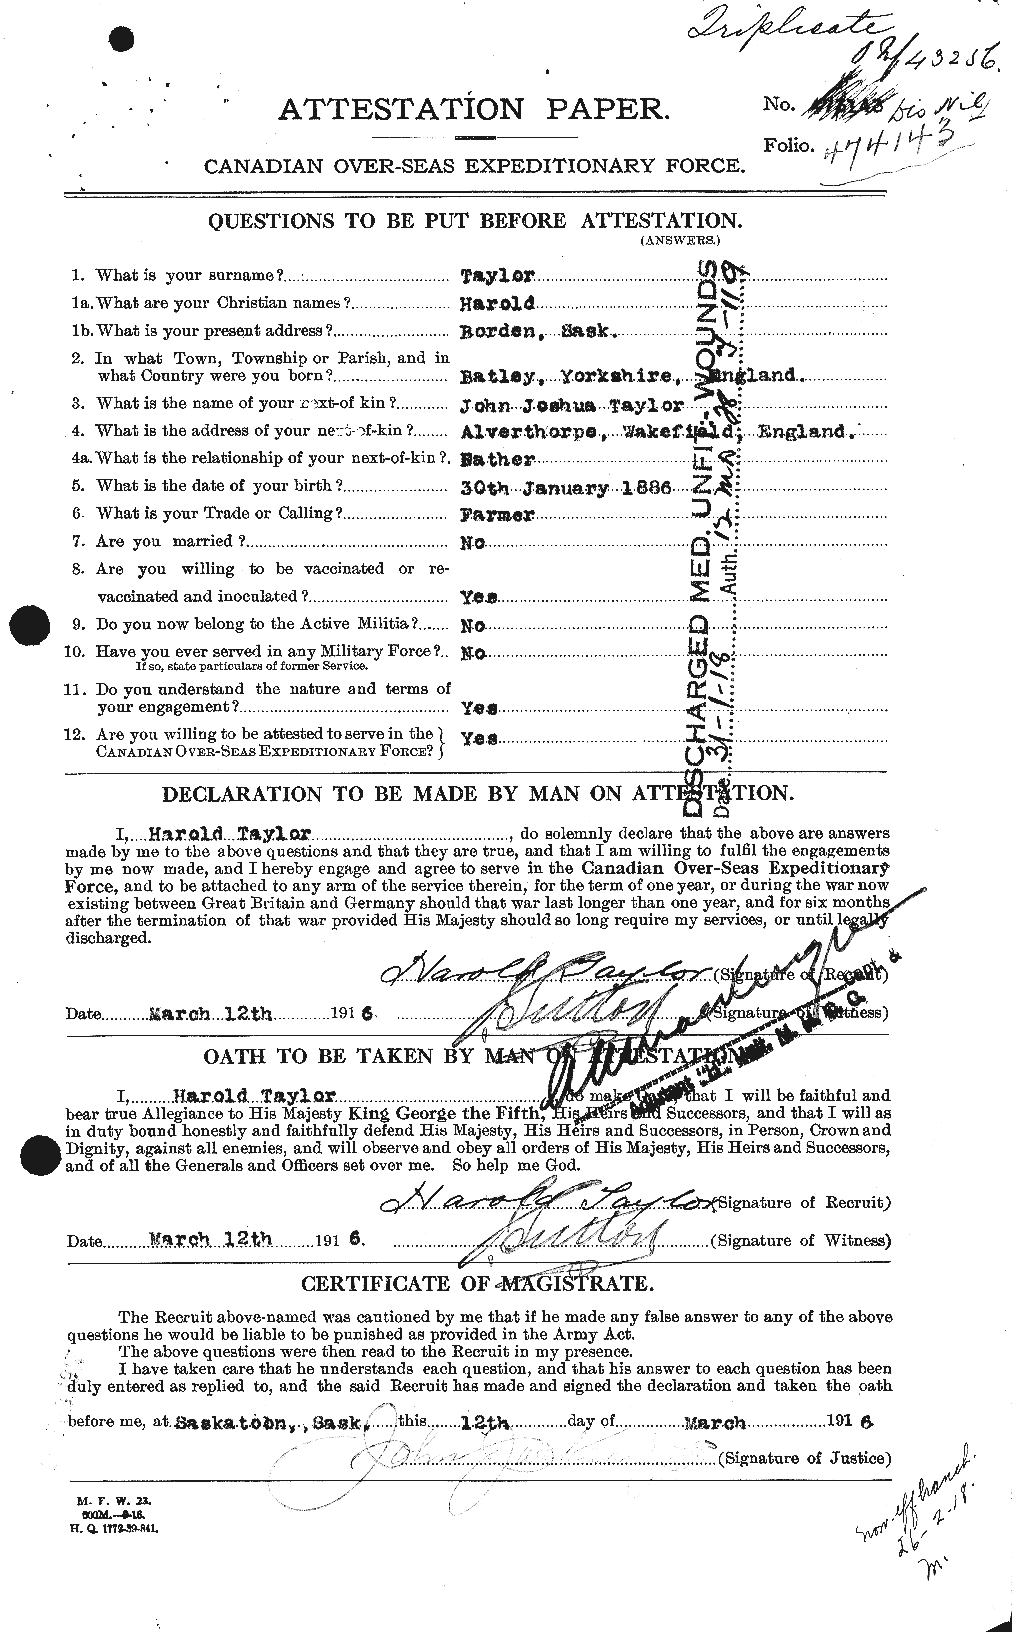 Dossiers du Personnel de la Première Guerre mondiale - CEC 626404a